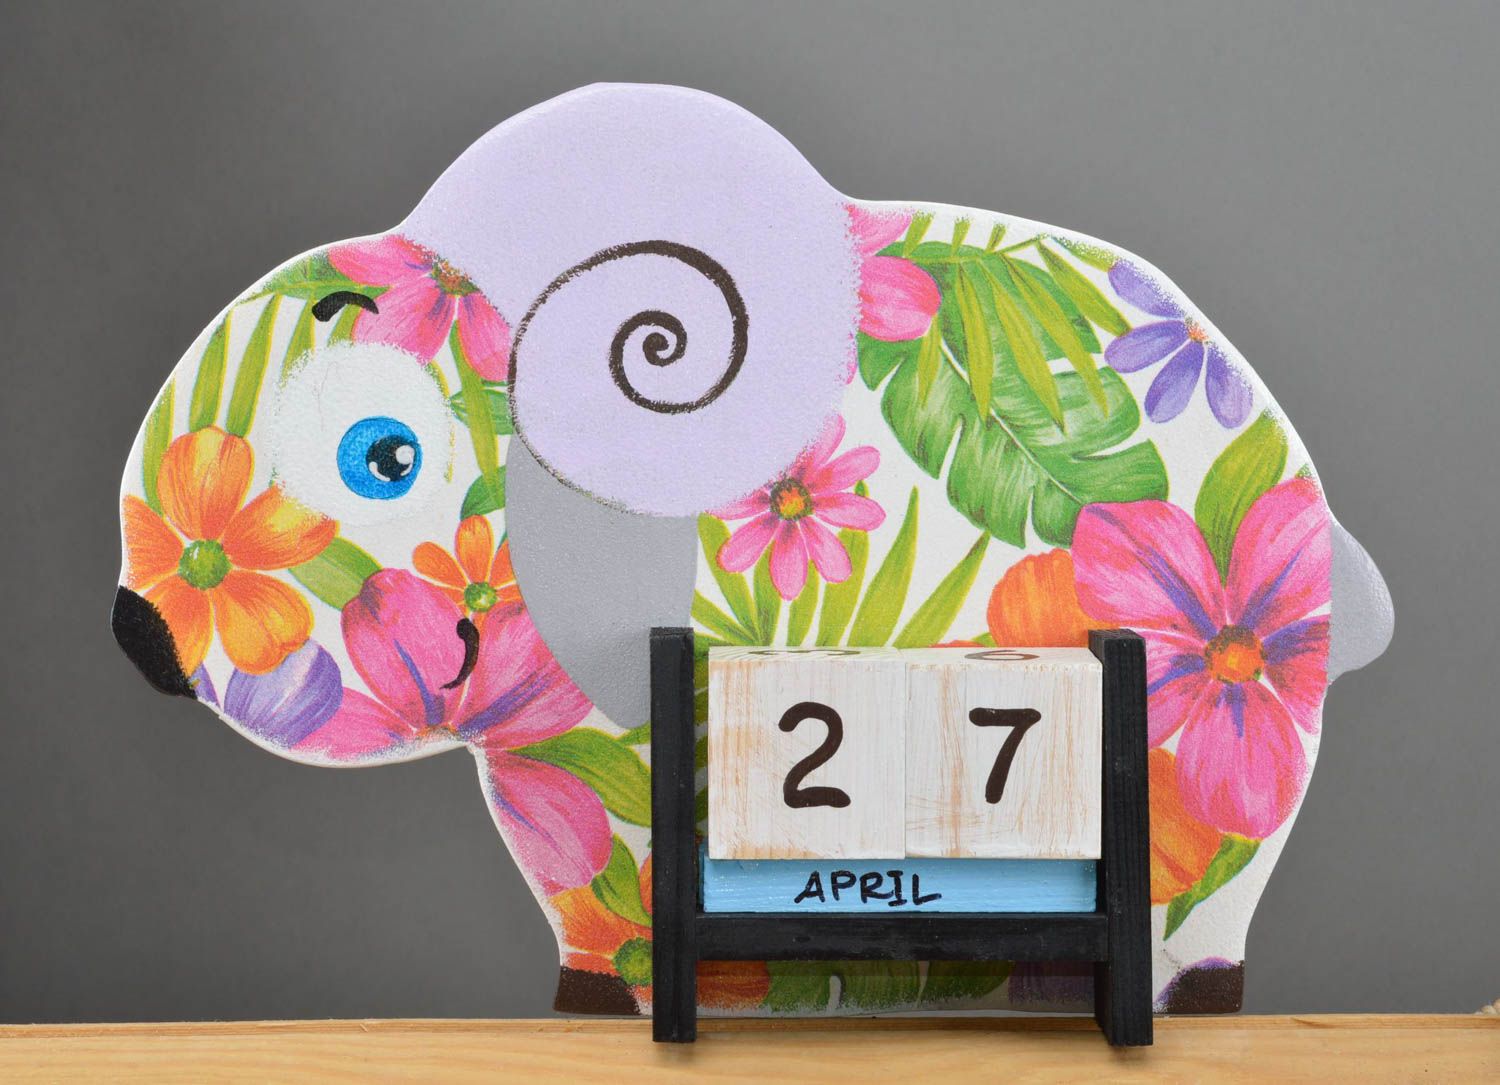 Детский календарь в виде барашка из фанеры декупаж в красивых цветах хэнд мэйд фото 2